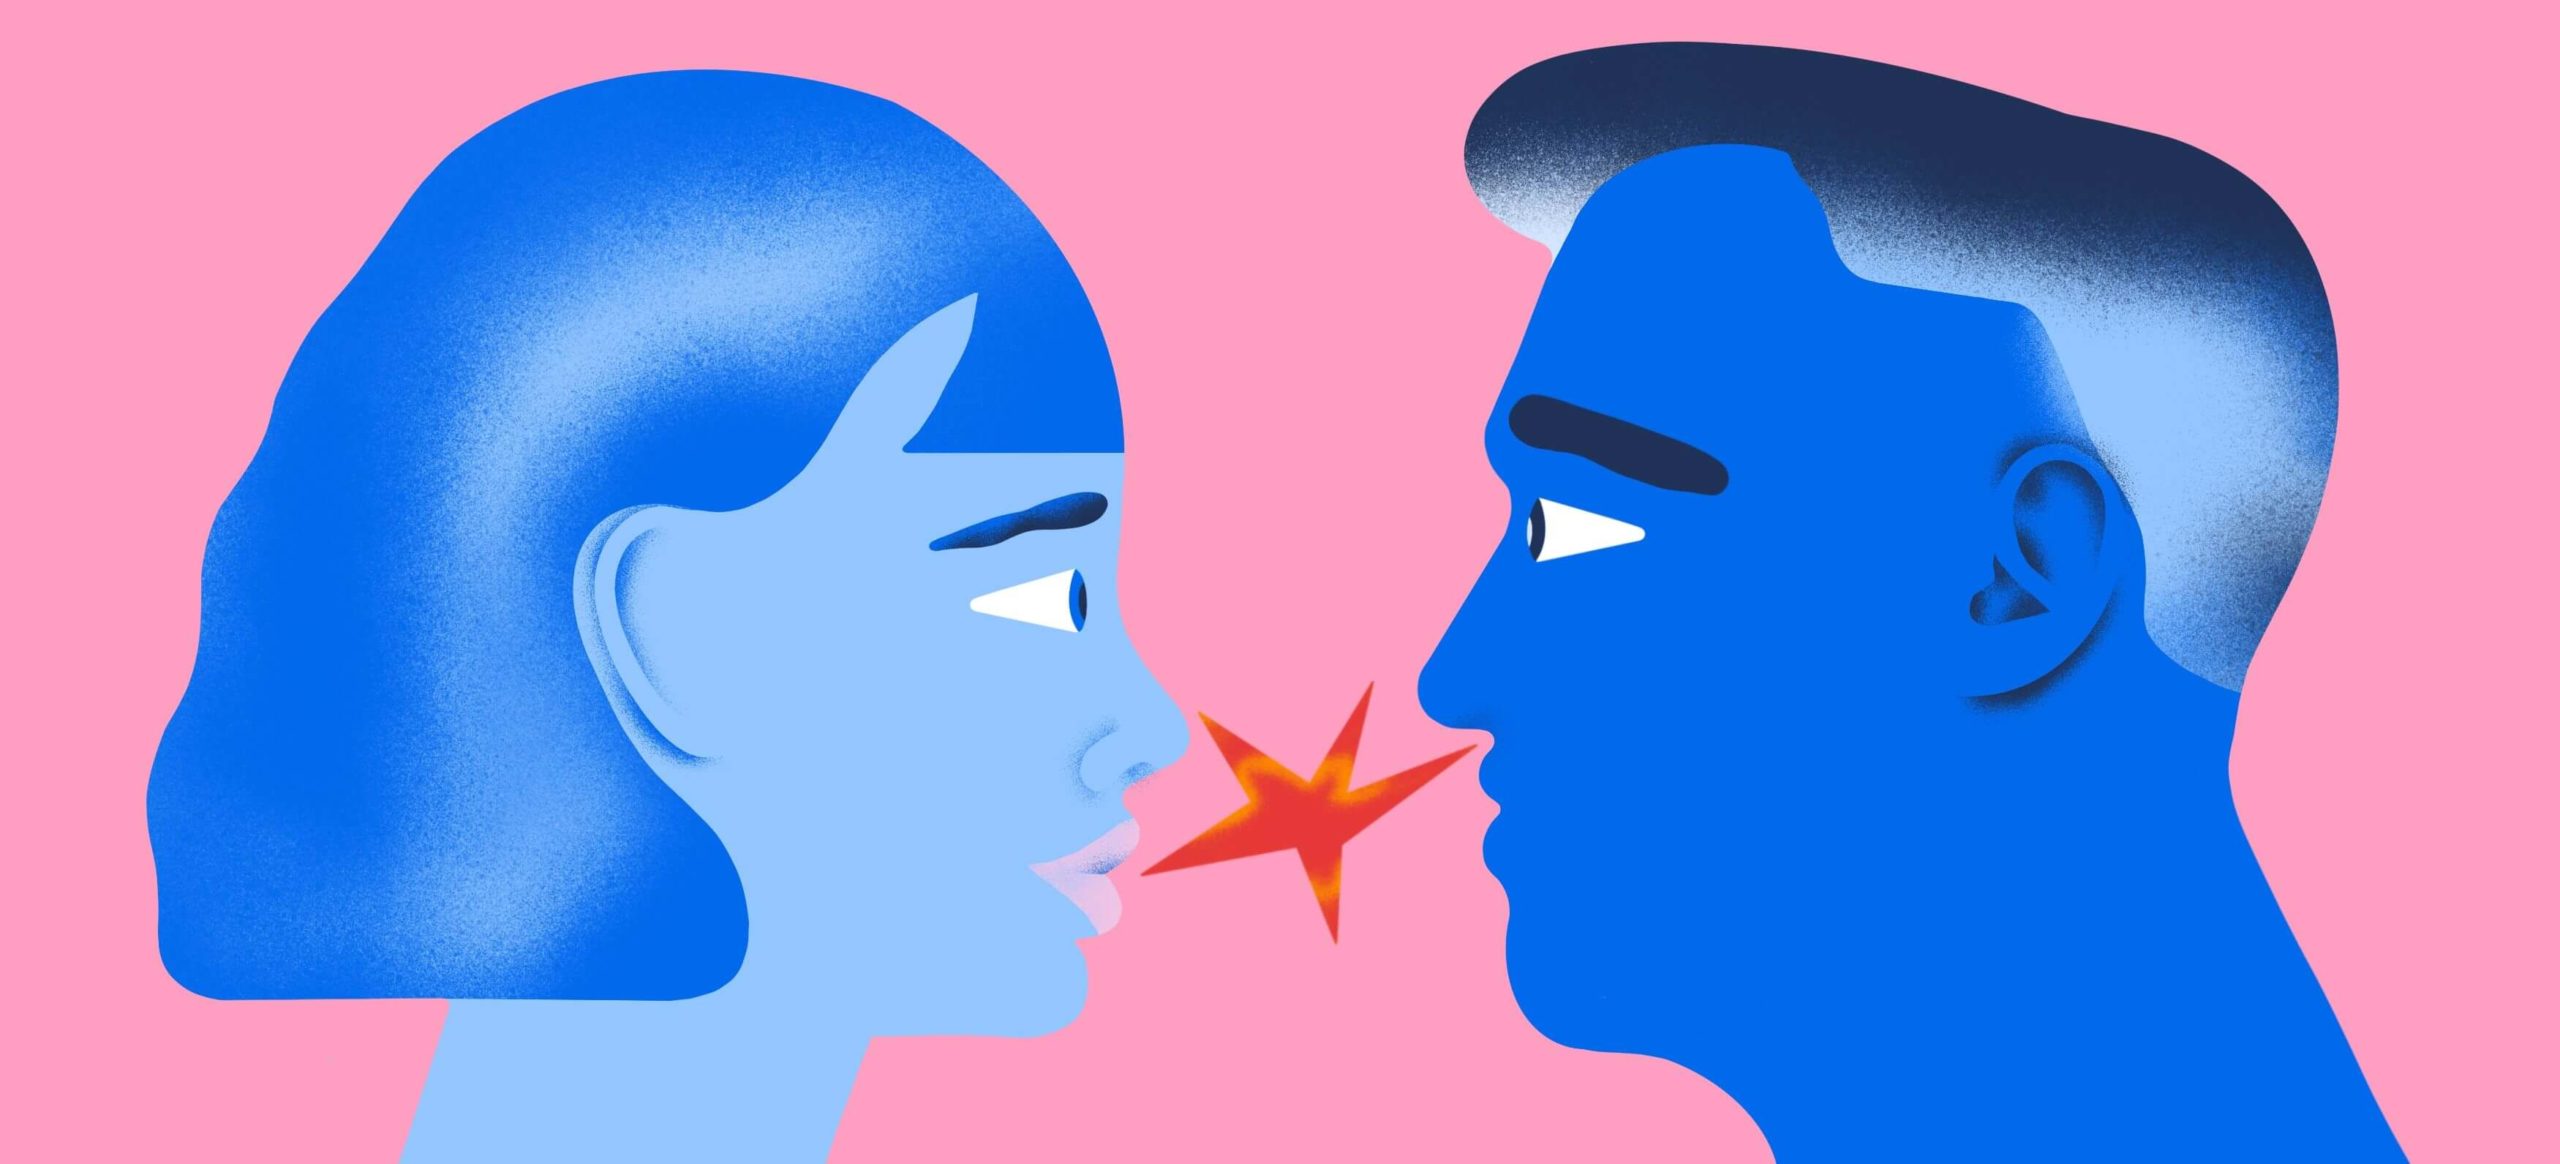 «Как будто меня разлюбили»: 6 вопросов, которые помогут поговорить с партнёром